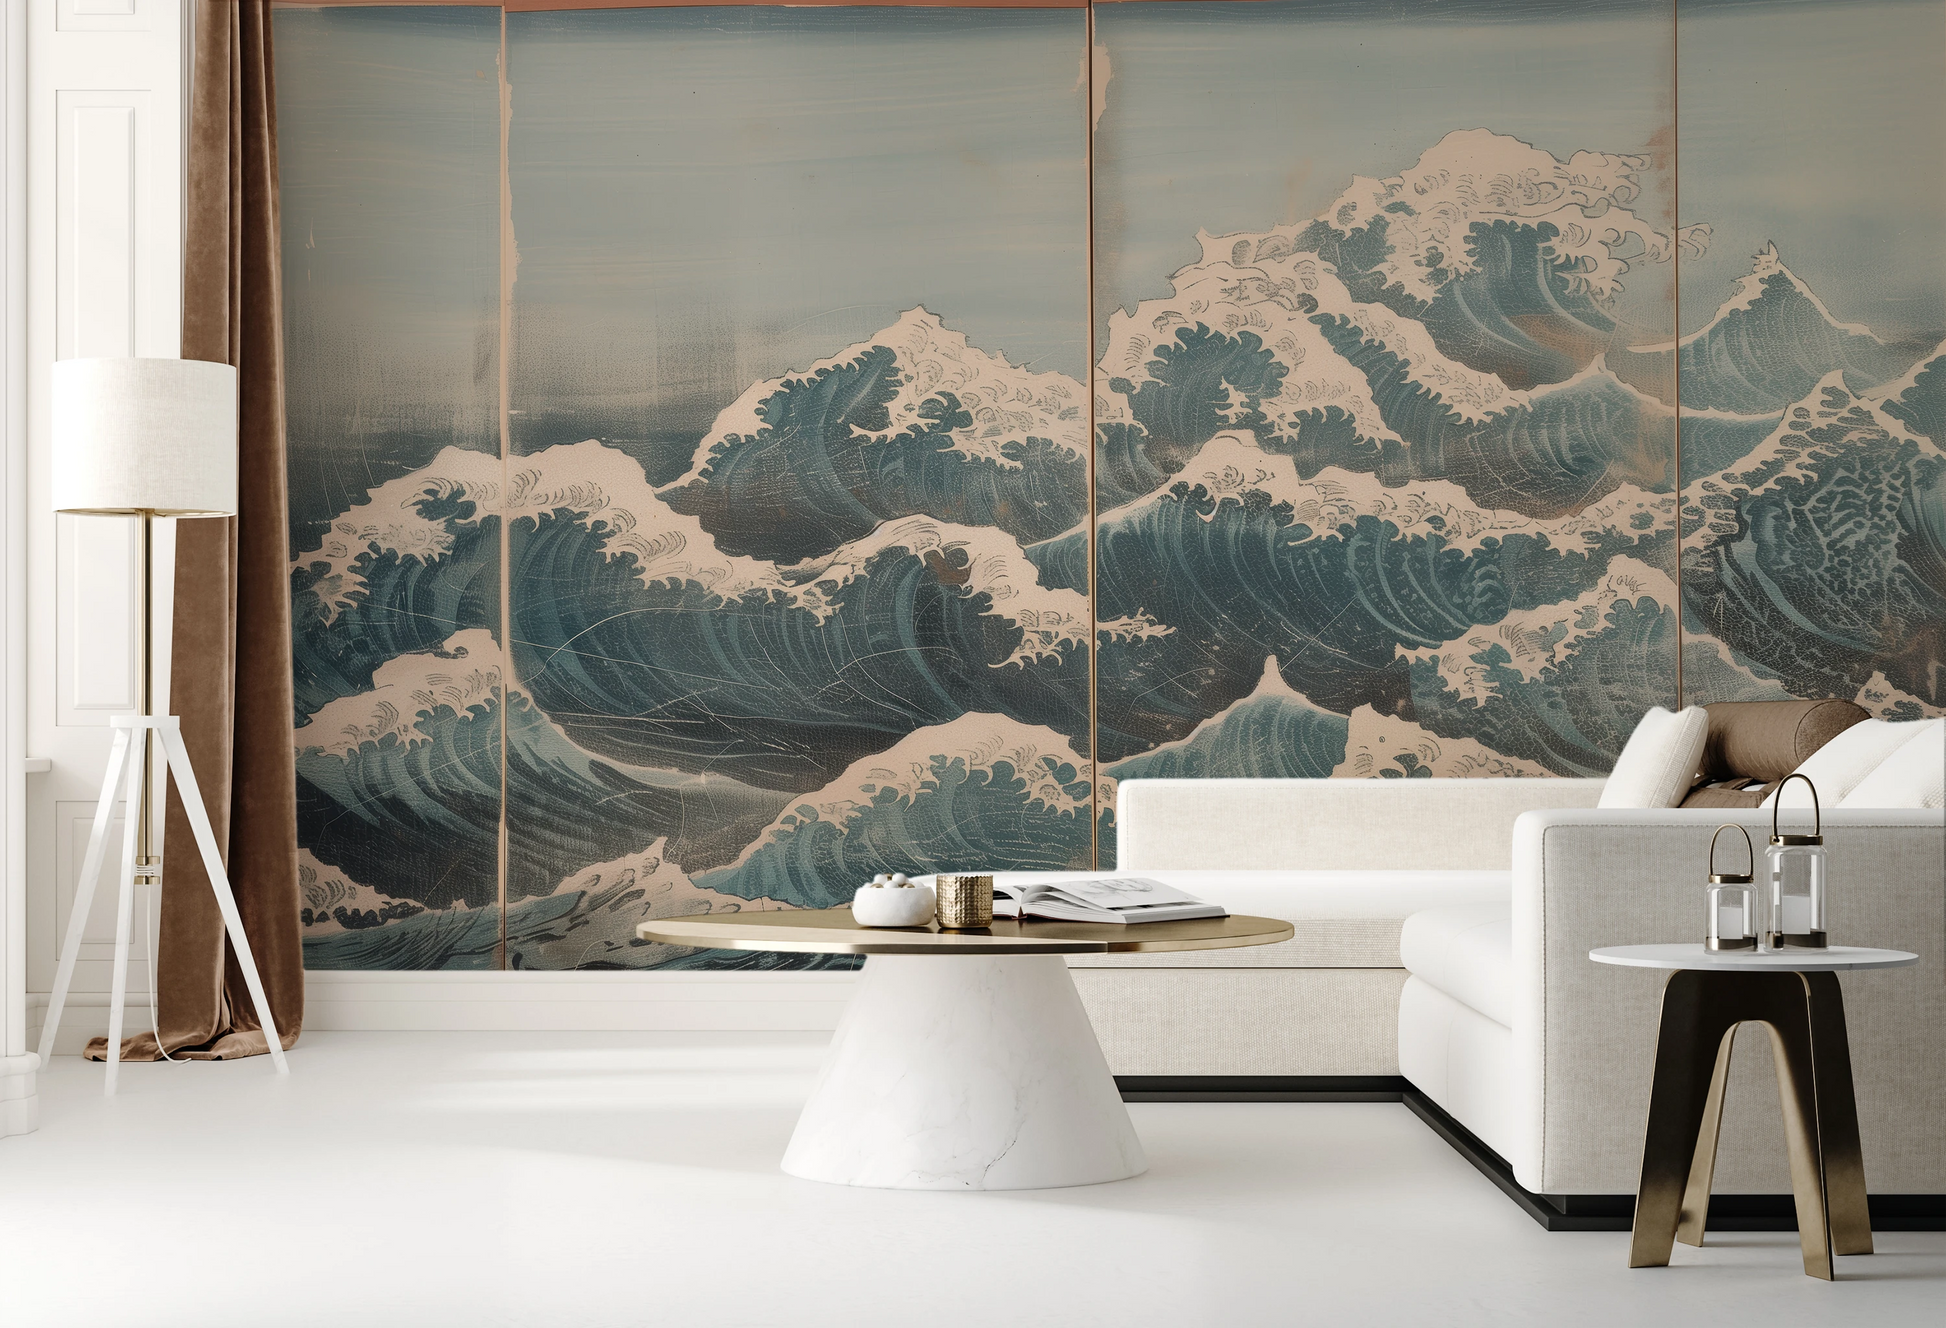 Fototapeta malowana o nazwie Snowy Peak Waves pokazana w aranżacji wnętrza.